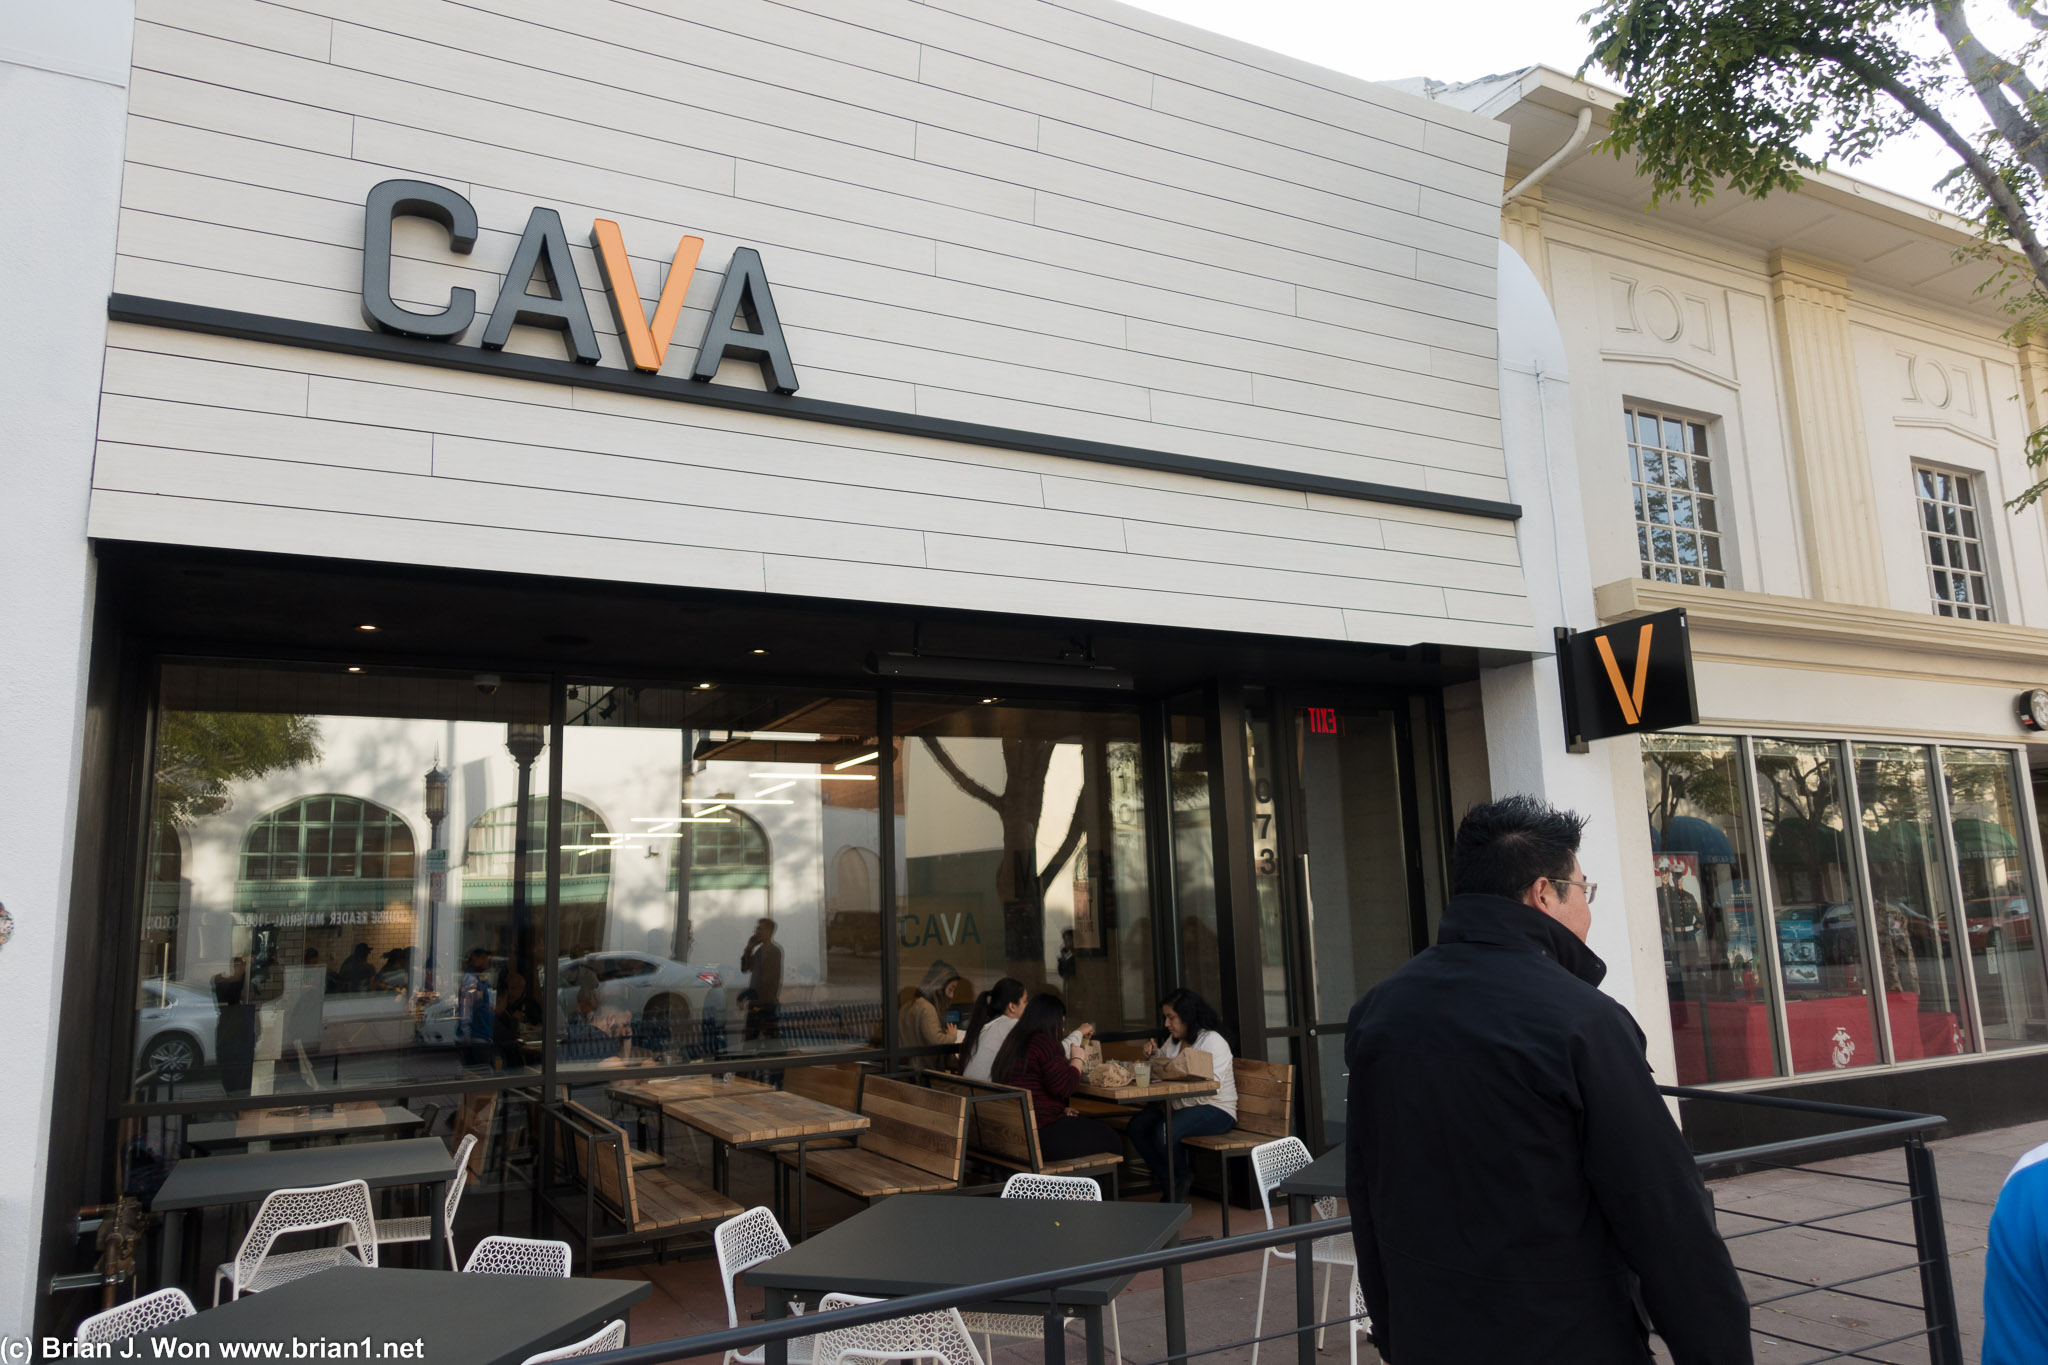 Cava, only been open a week?